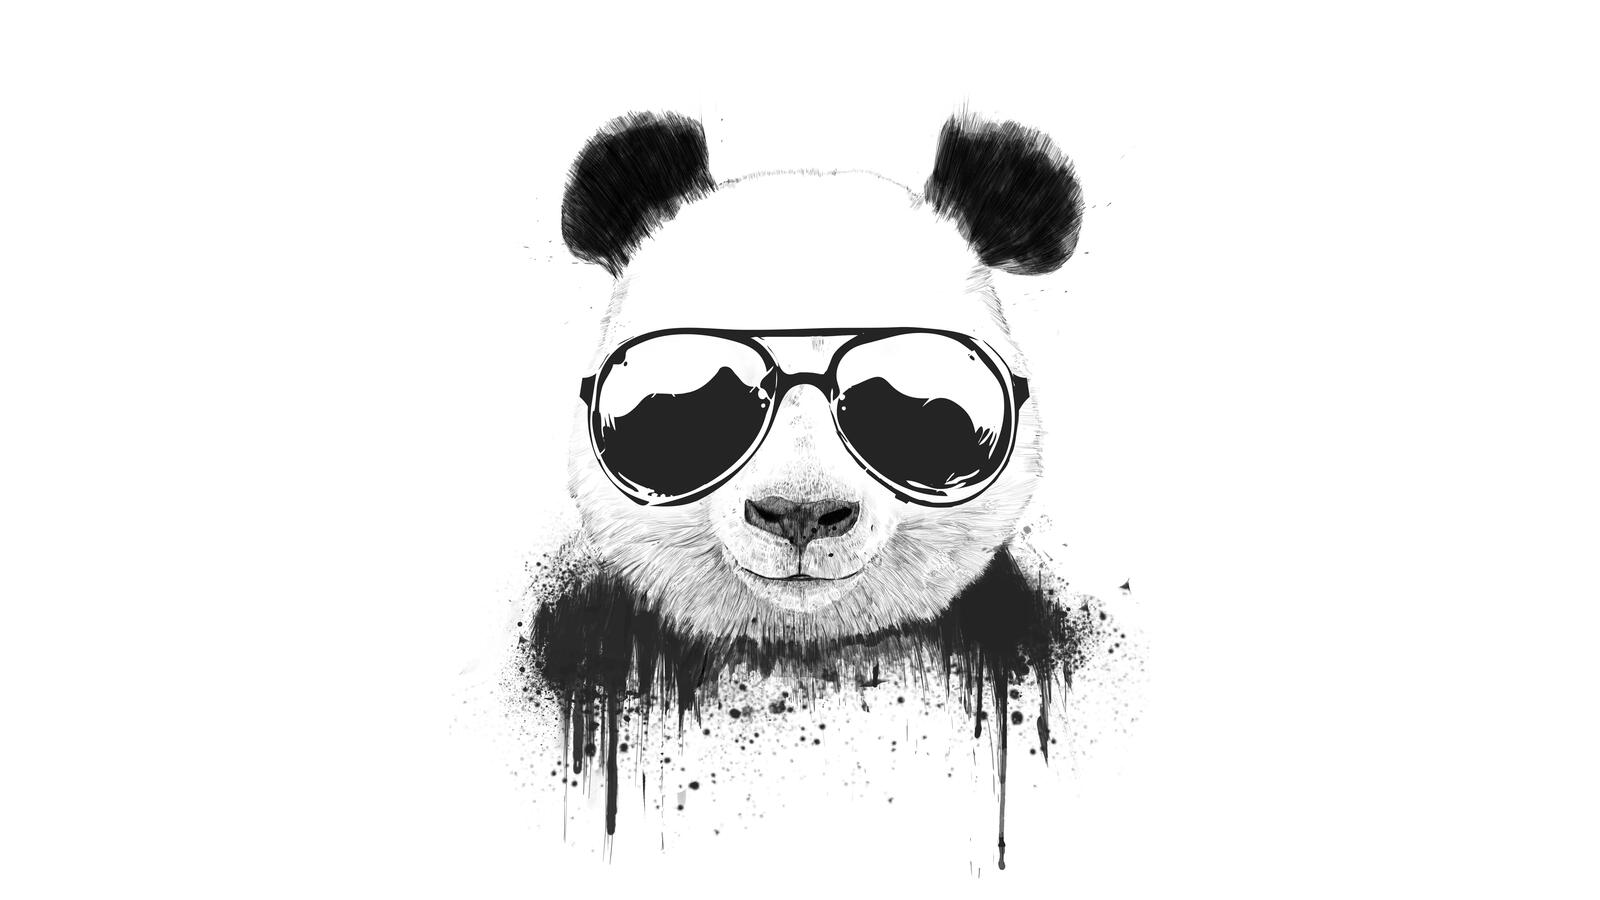 Бесплатное фото Брутальная панда в очках